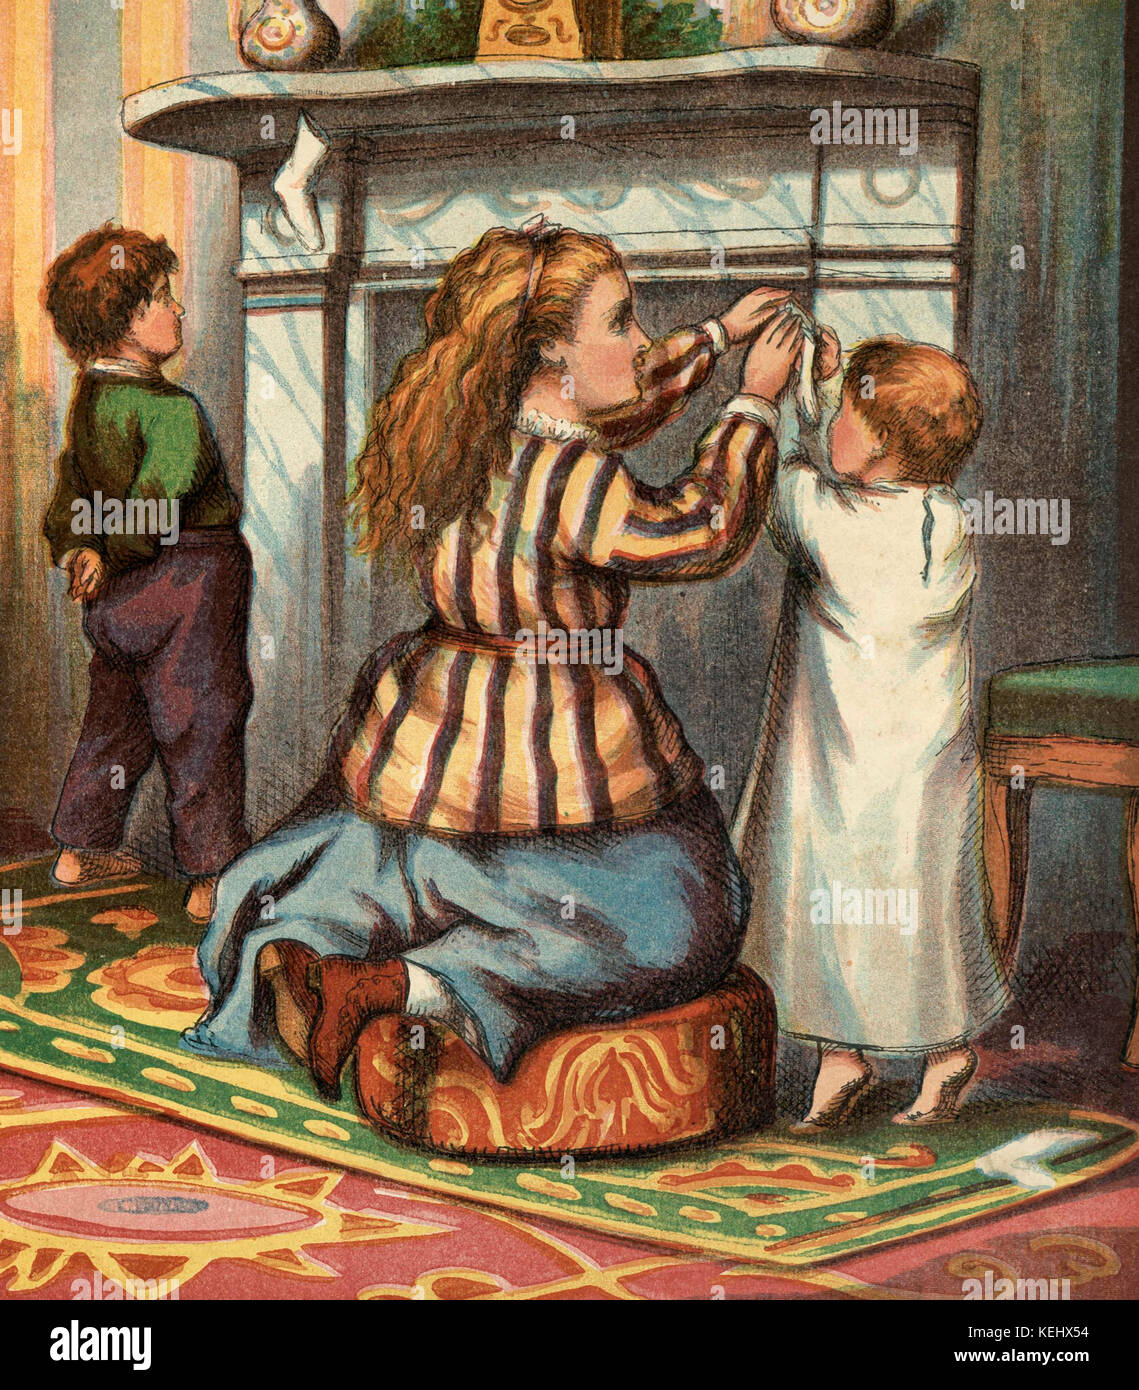 Illustration d'enfants Vintage pendaison les bas par la cheminée avec soin Banque D'Images